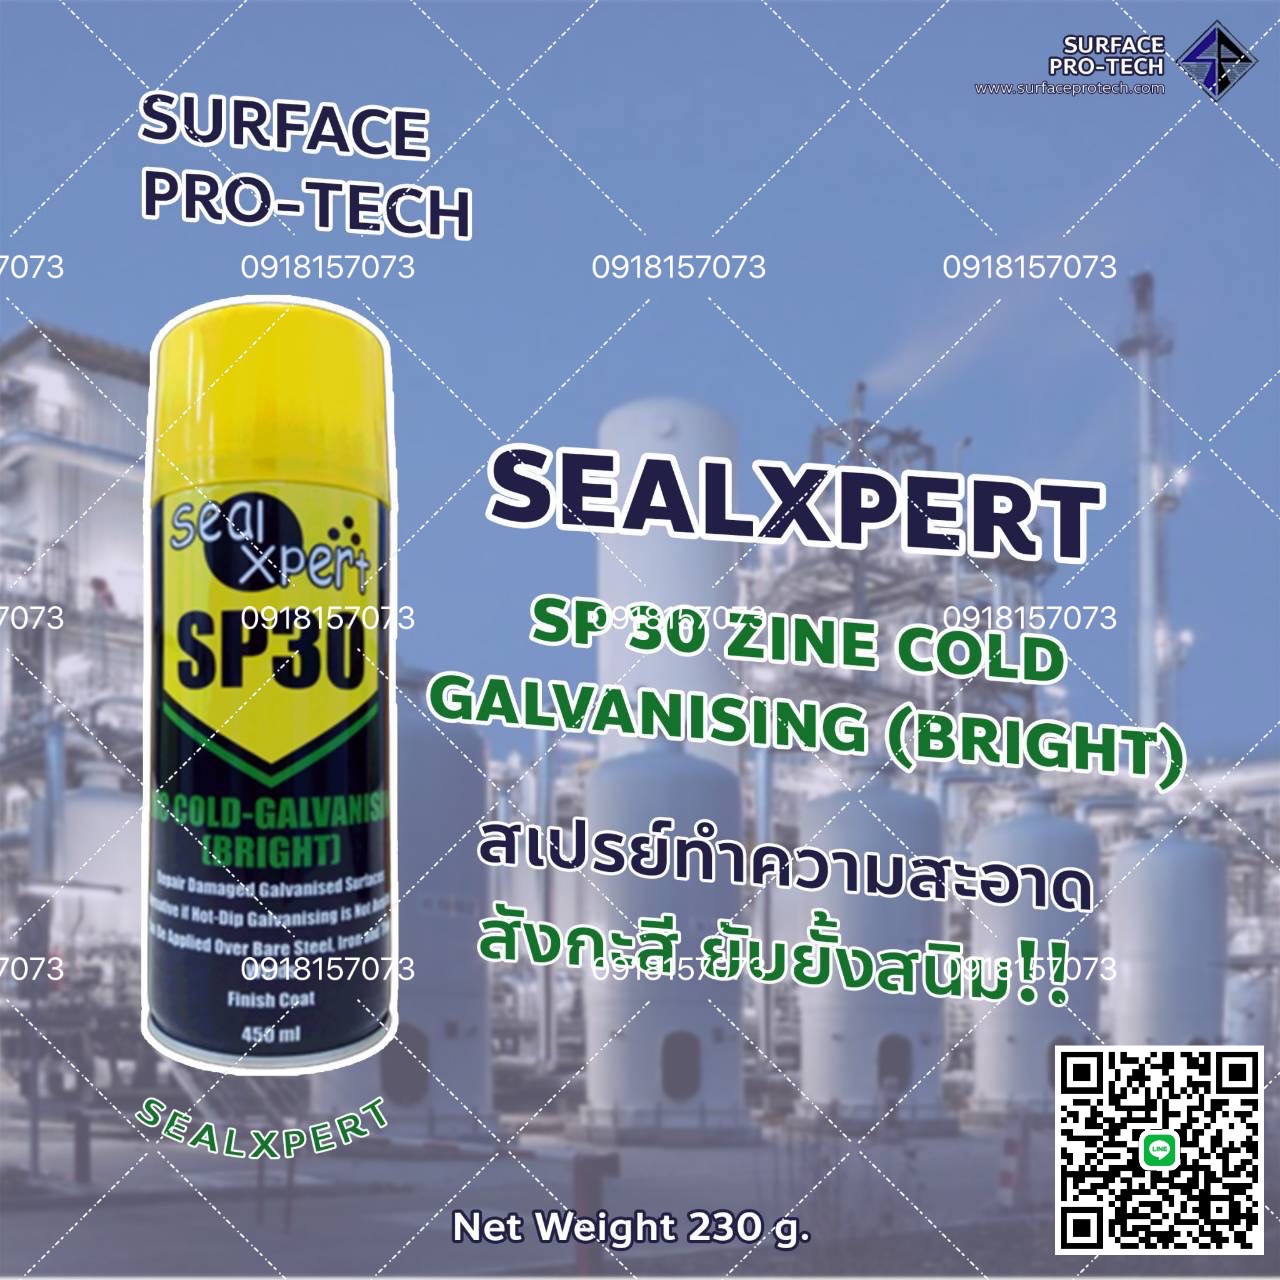 SealXpert SP30 Zinc Cold-Galvanising (Bright) สเปรย์ทำความสะอาดสังกะสีเหลว ชนิดสีเทาเงิน ใช้ยับยั้งสนิม อุณหภูมิใช้งานสูงสุด 500°C>>สอบถามราคาพิเศษได้ที่0918157073ค่ะ<< รูปที่ 1